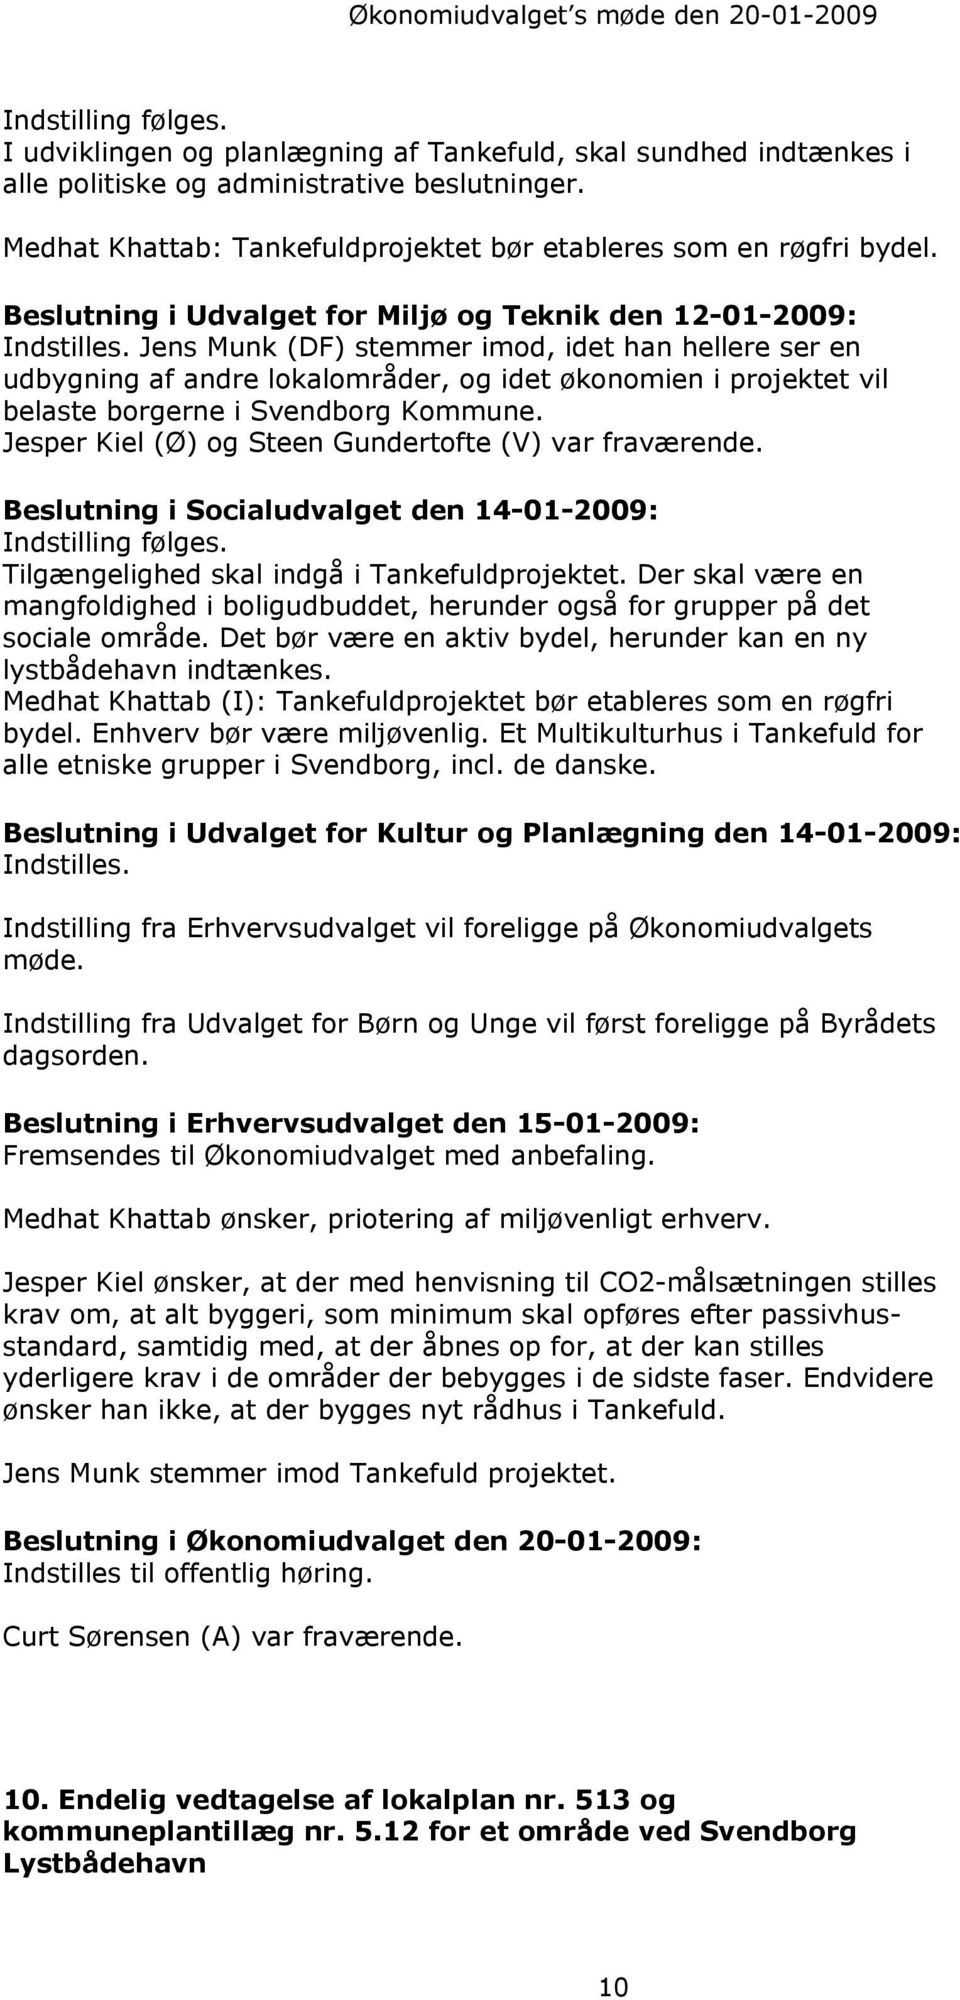 Beslutning i Udvalget for Miljø og Teknik den 12-01-2009: Jens Munk (DF) stemmer imod, idet han hellere ser en udbygning af andre lokalområder, og idet økonomien i projektet vil belaste borgerne i